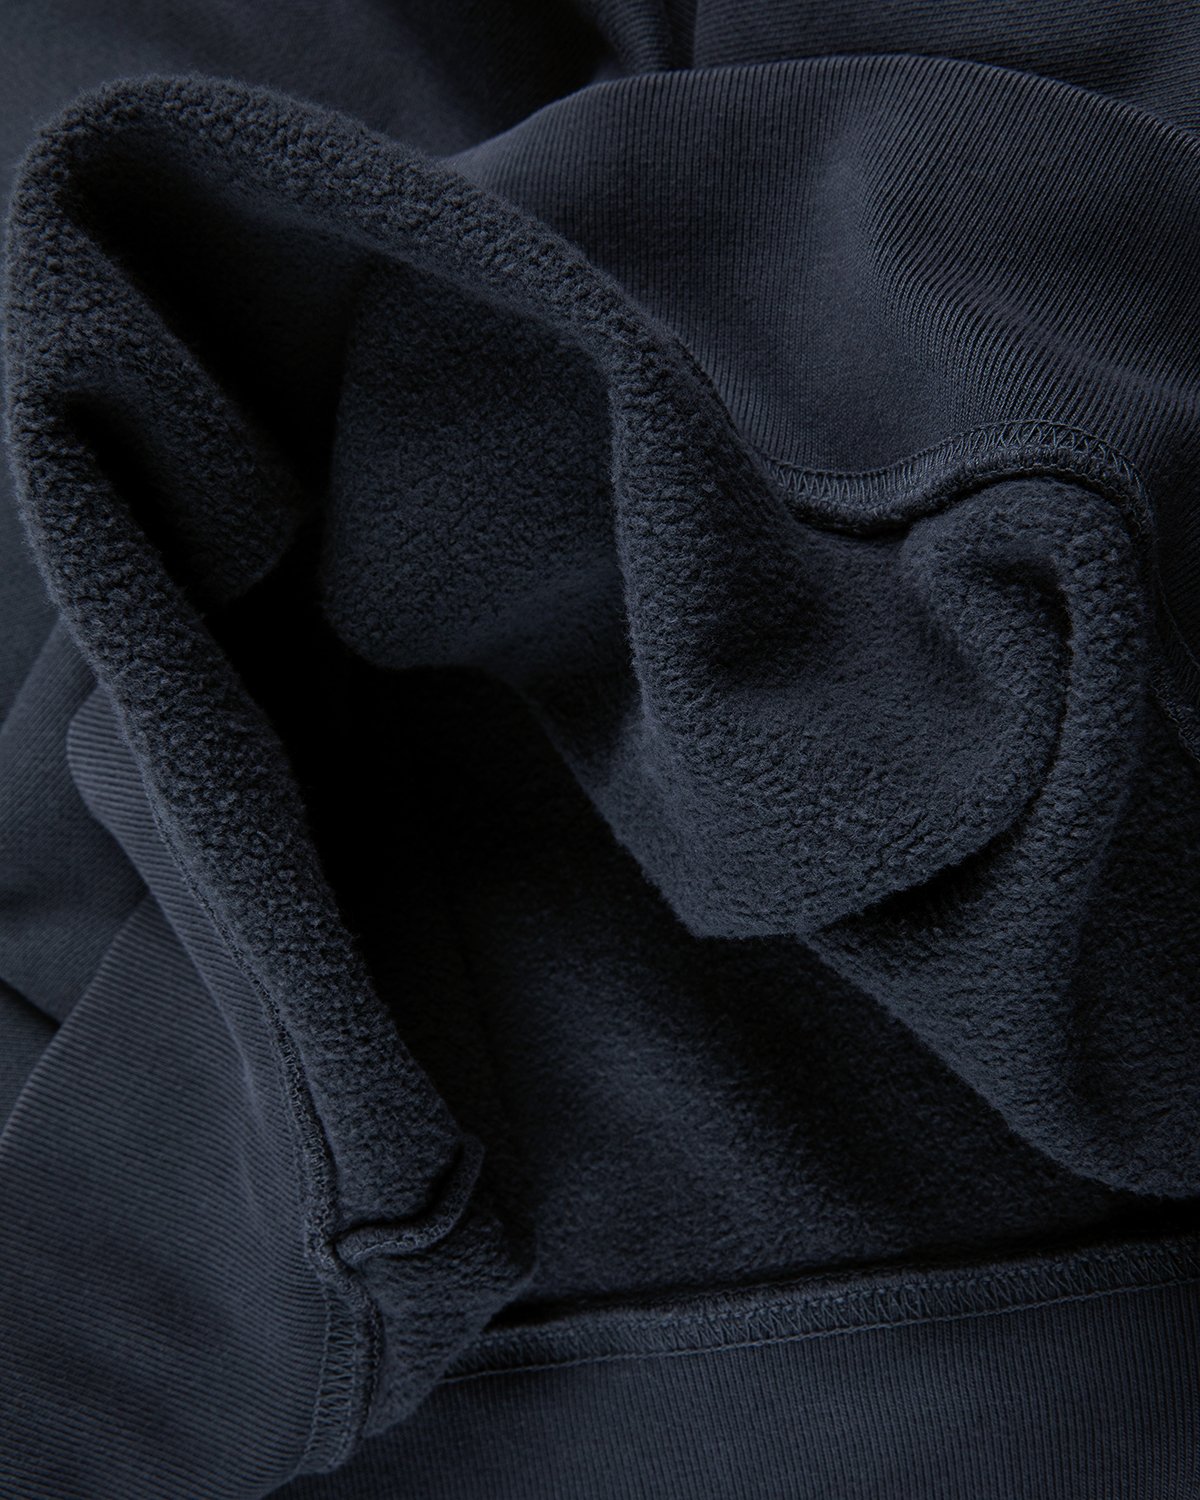 Darryl Brown - Hoodie Vintage Black - Clothing - Black - Image 5